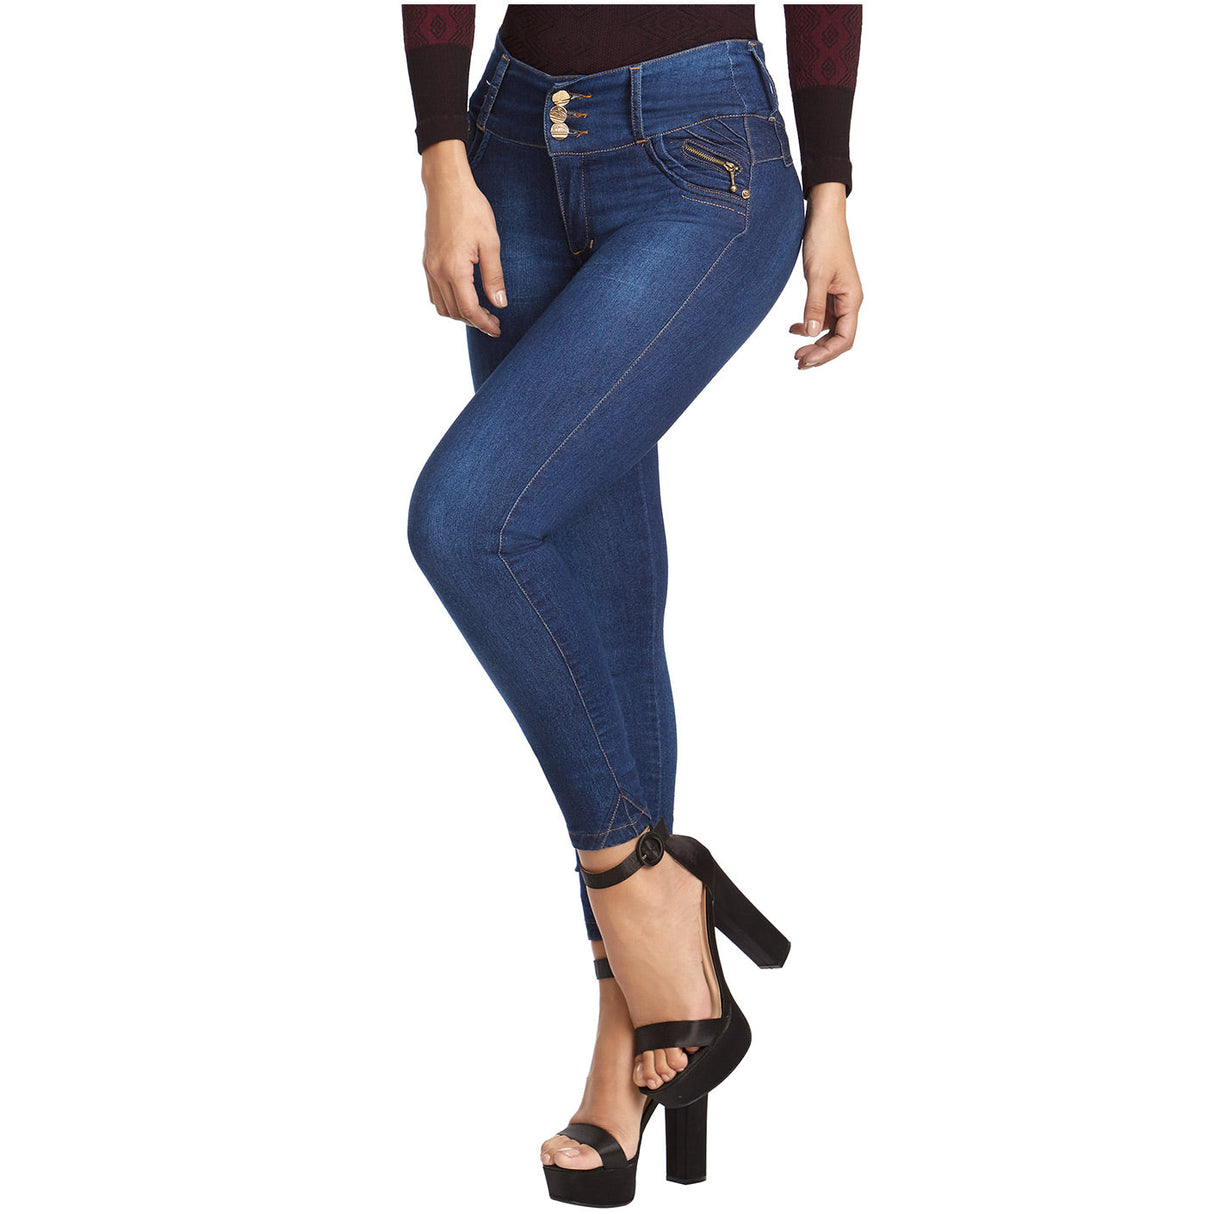 Women's Jeans, Chic & Comfortable, TRISTAN